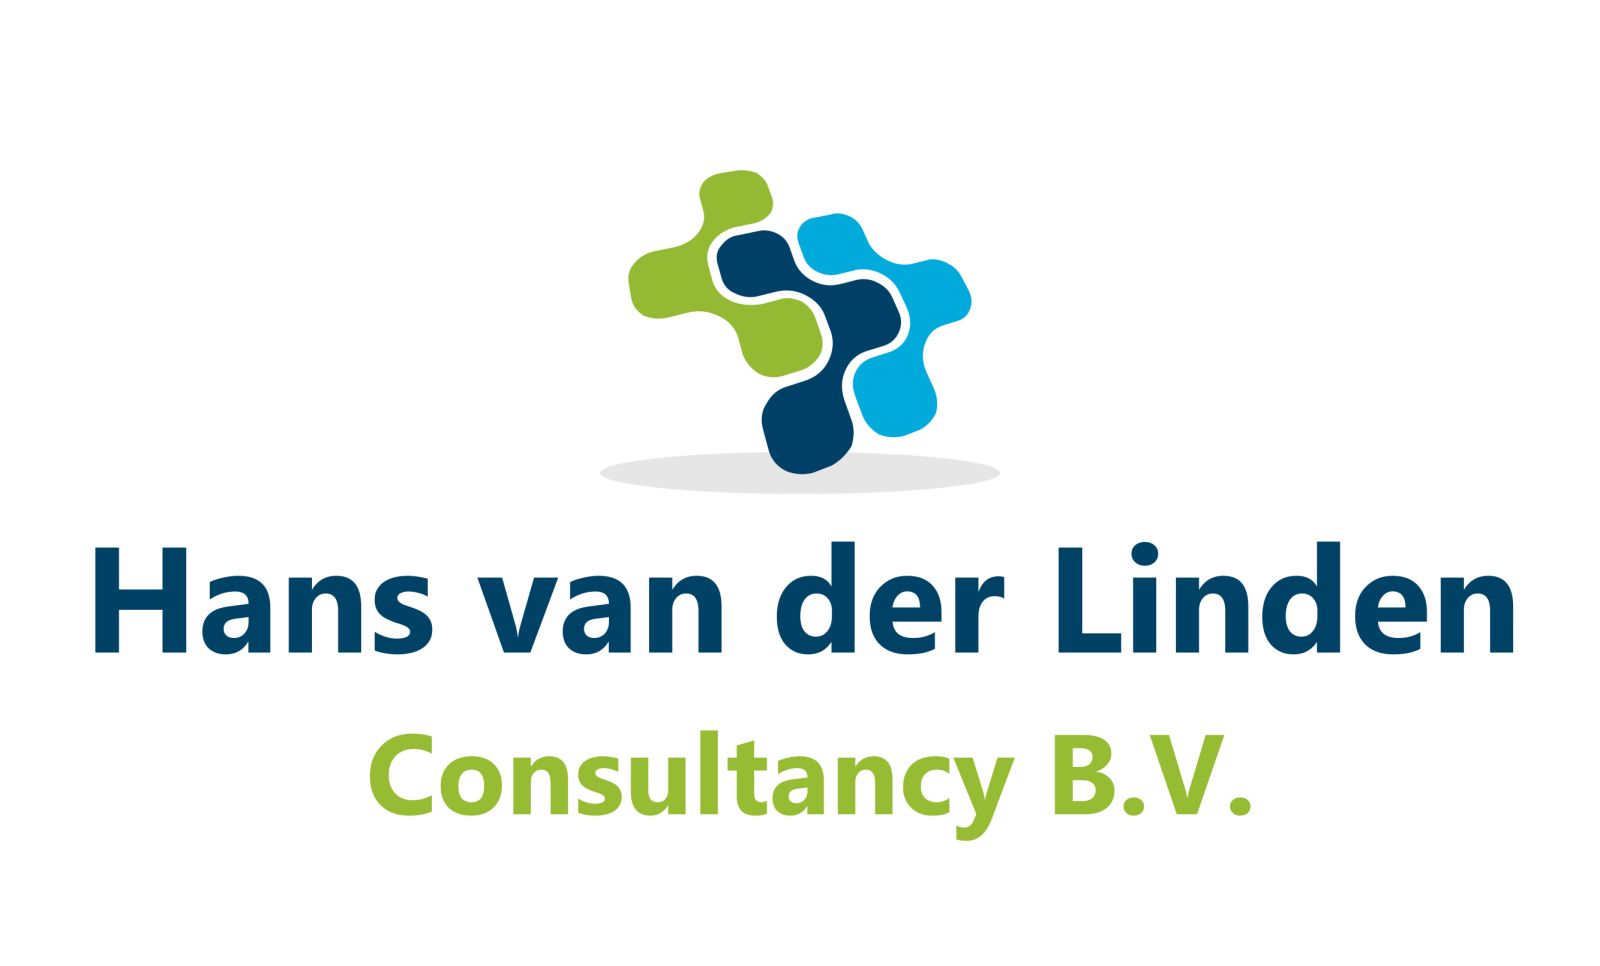 Hans van der Linden Consultancy